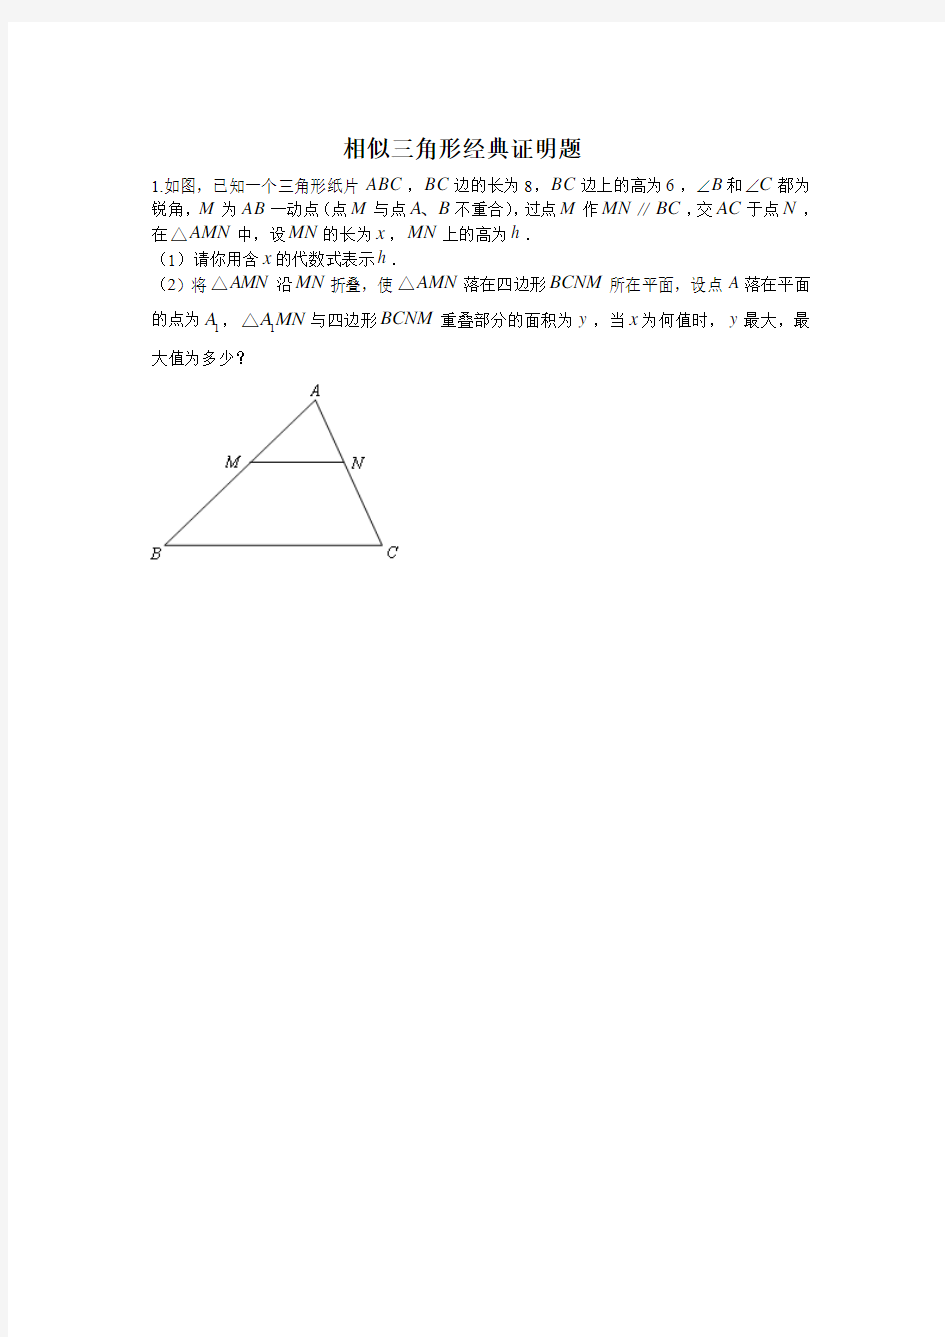 相似三角形经典证明题解析